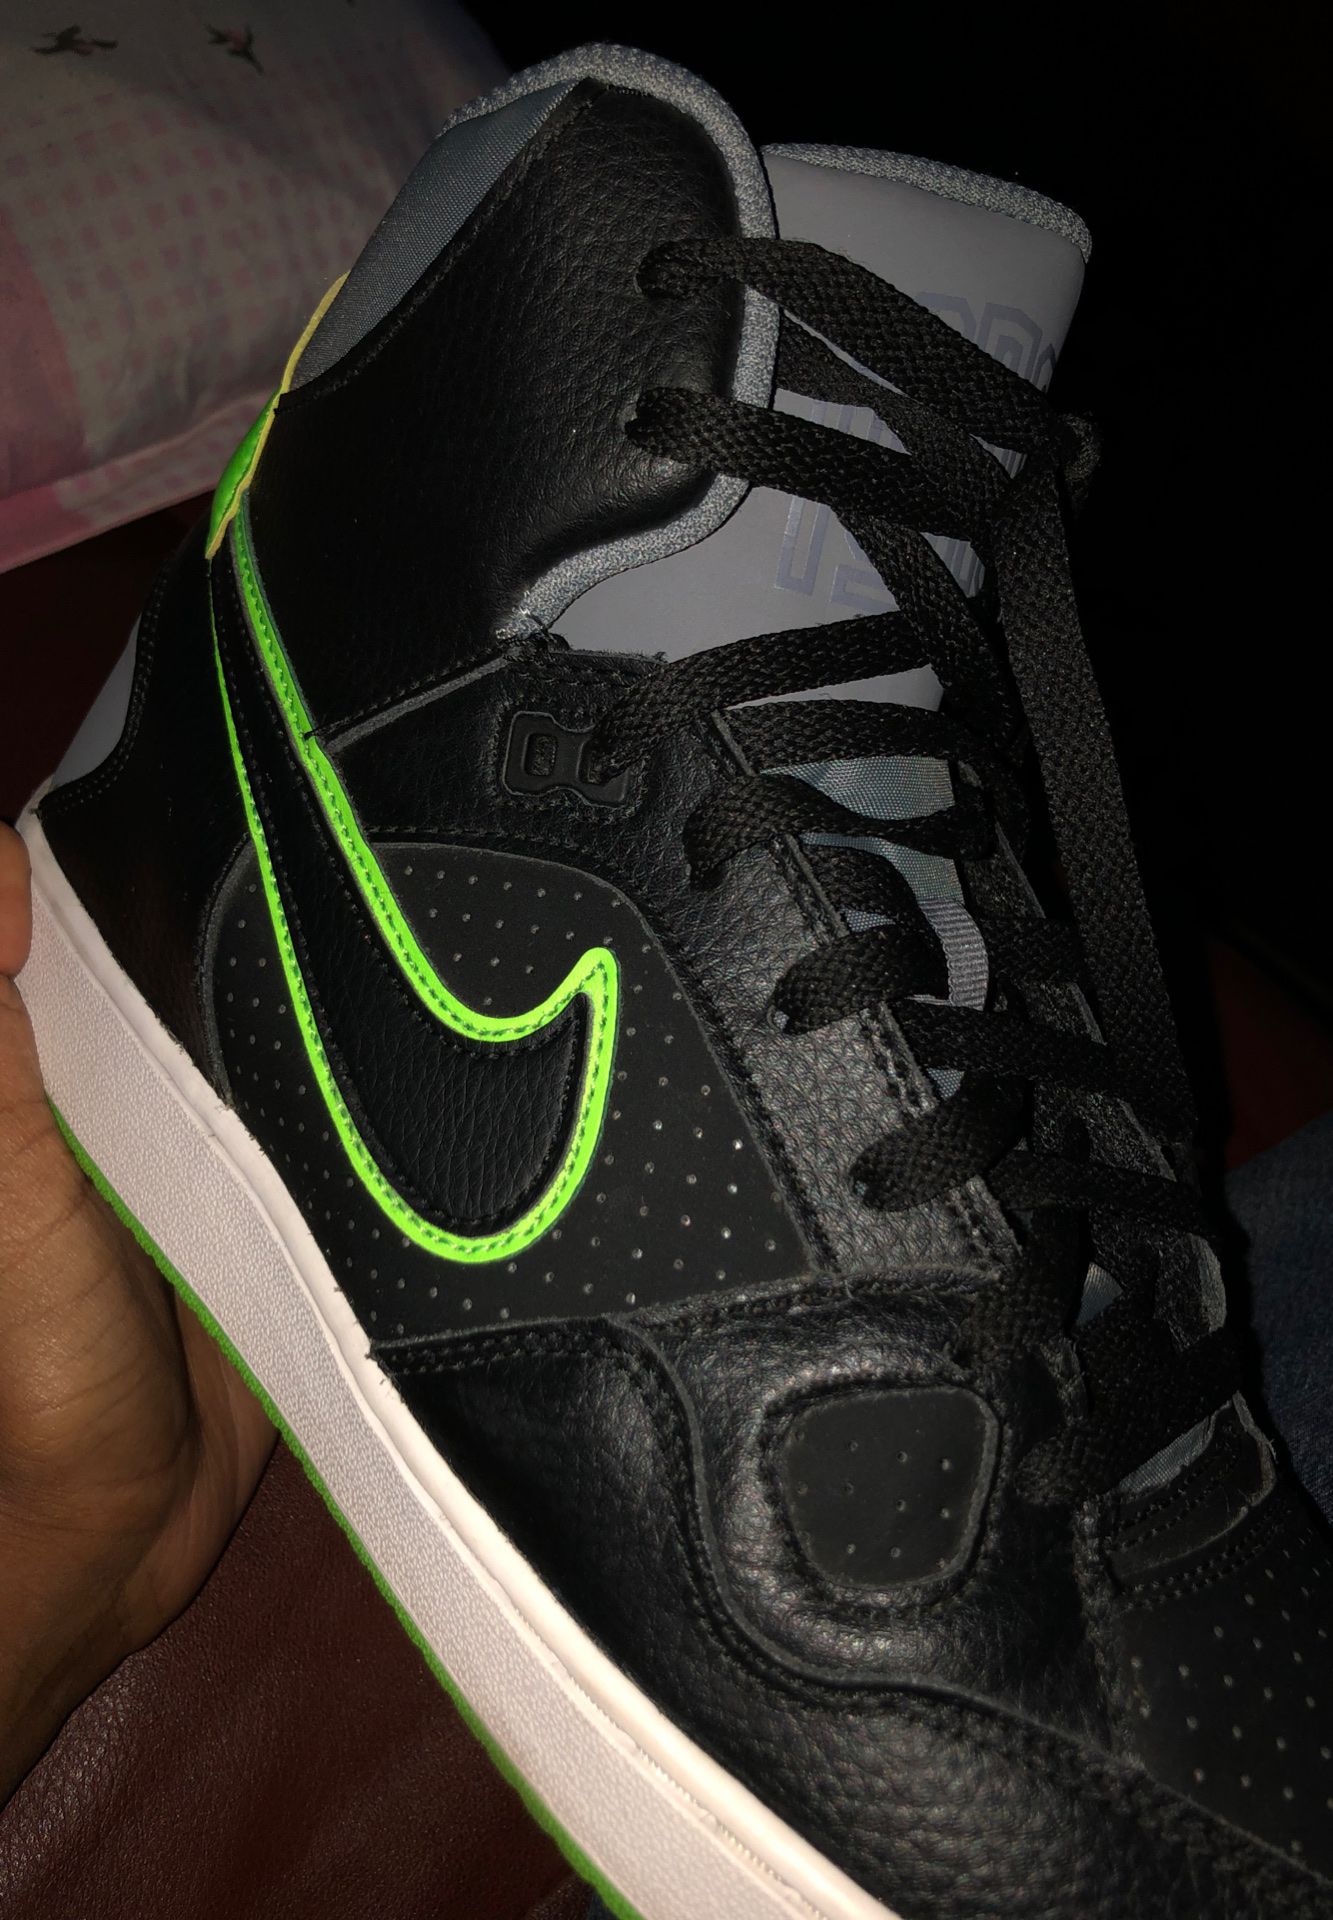 Nike Sb High Light Green and Black Color Way